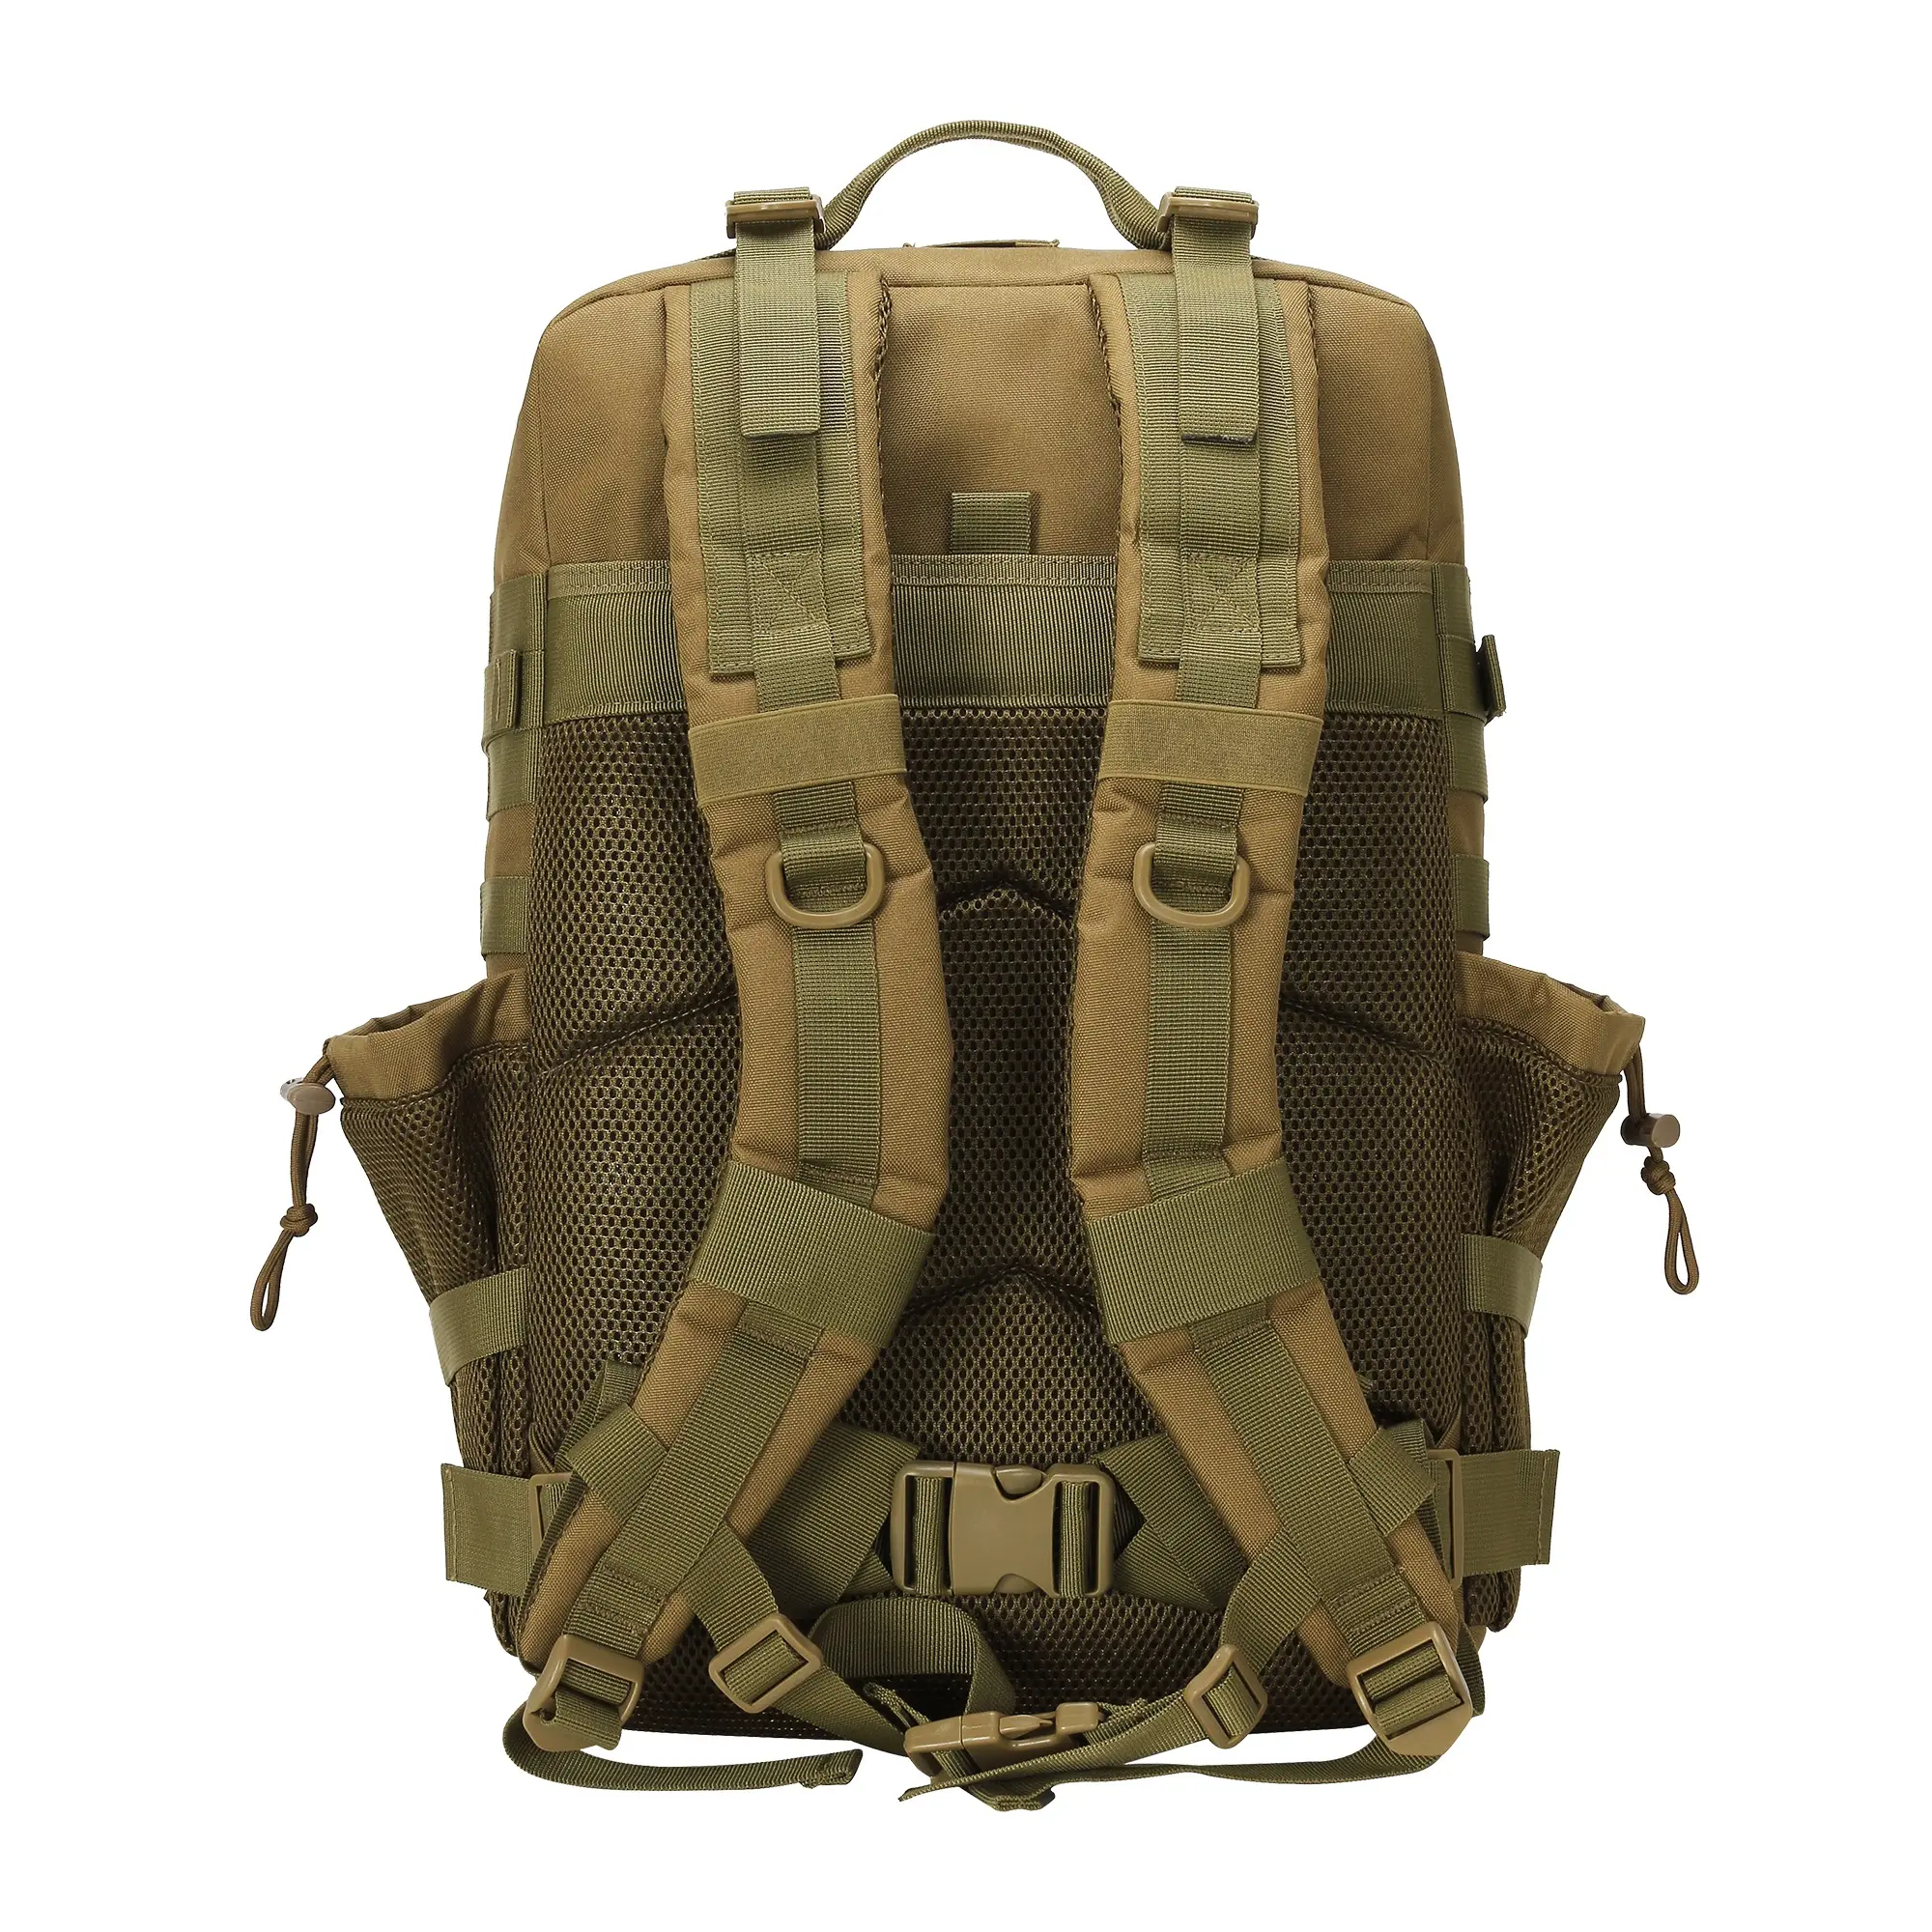 Lupu mochila tática 45l/25l 3p mais popular personalizada, para viagem, acampamento, caminhadas ao ar livre